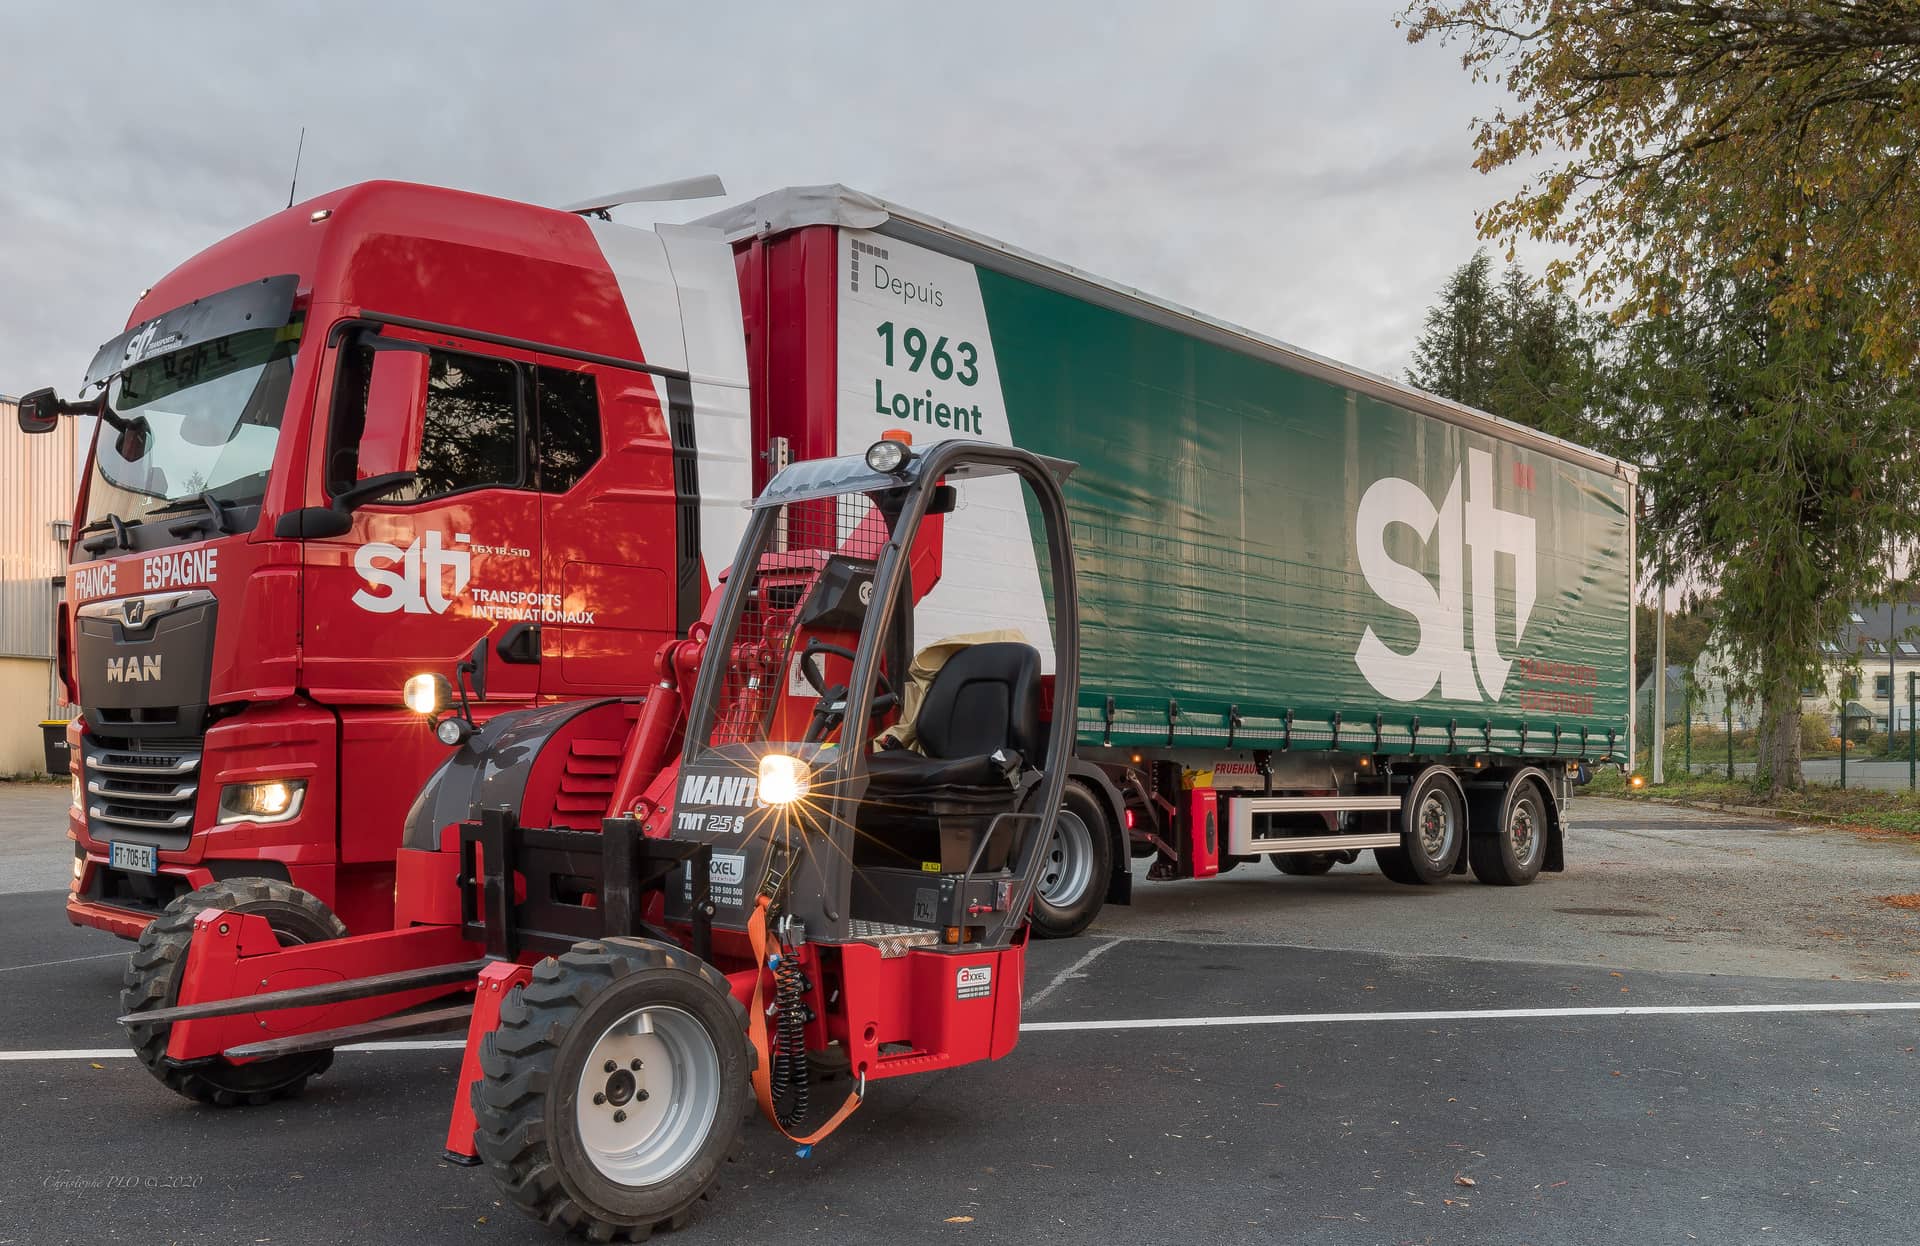 Transport et logistique - Camion Transport S.L.T.I